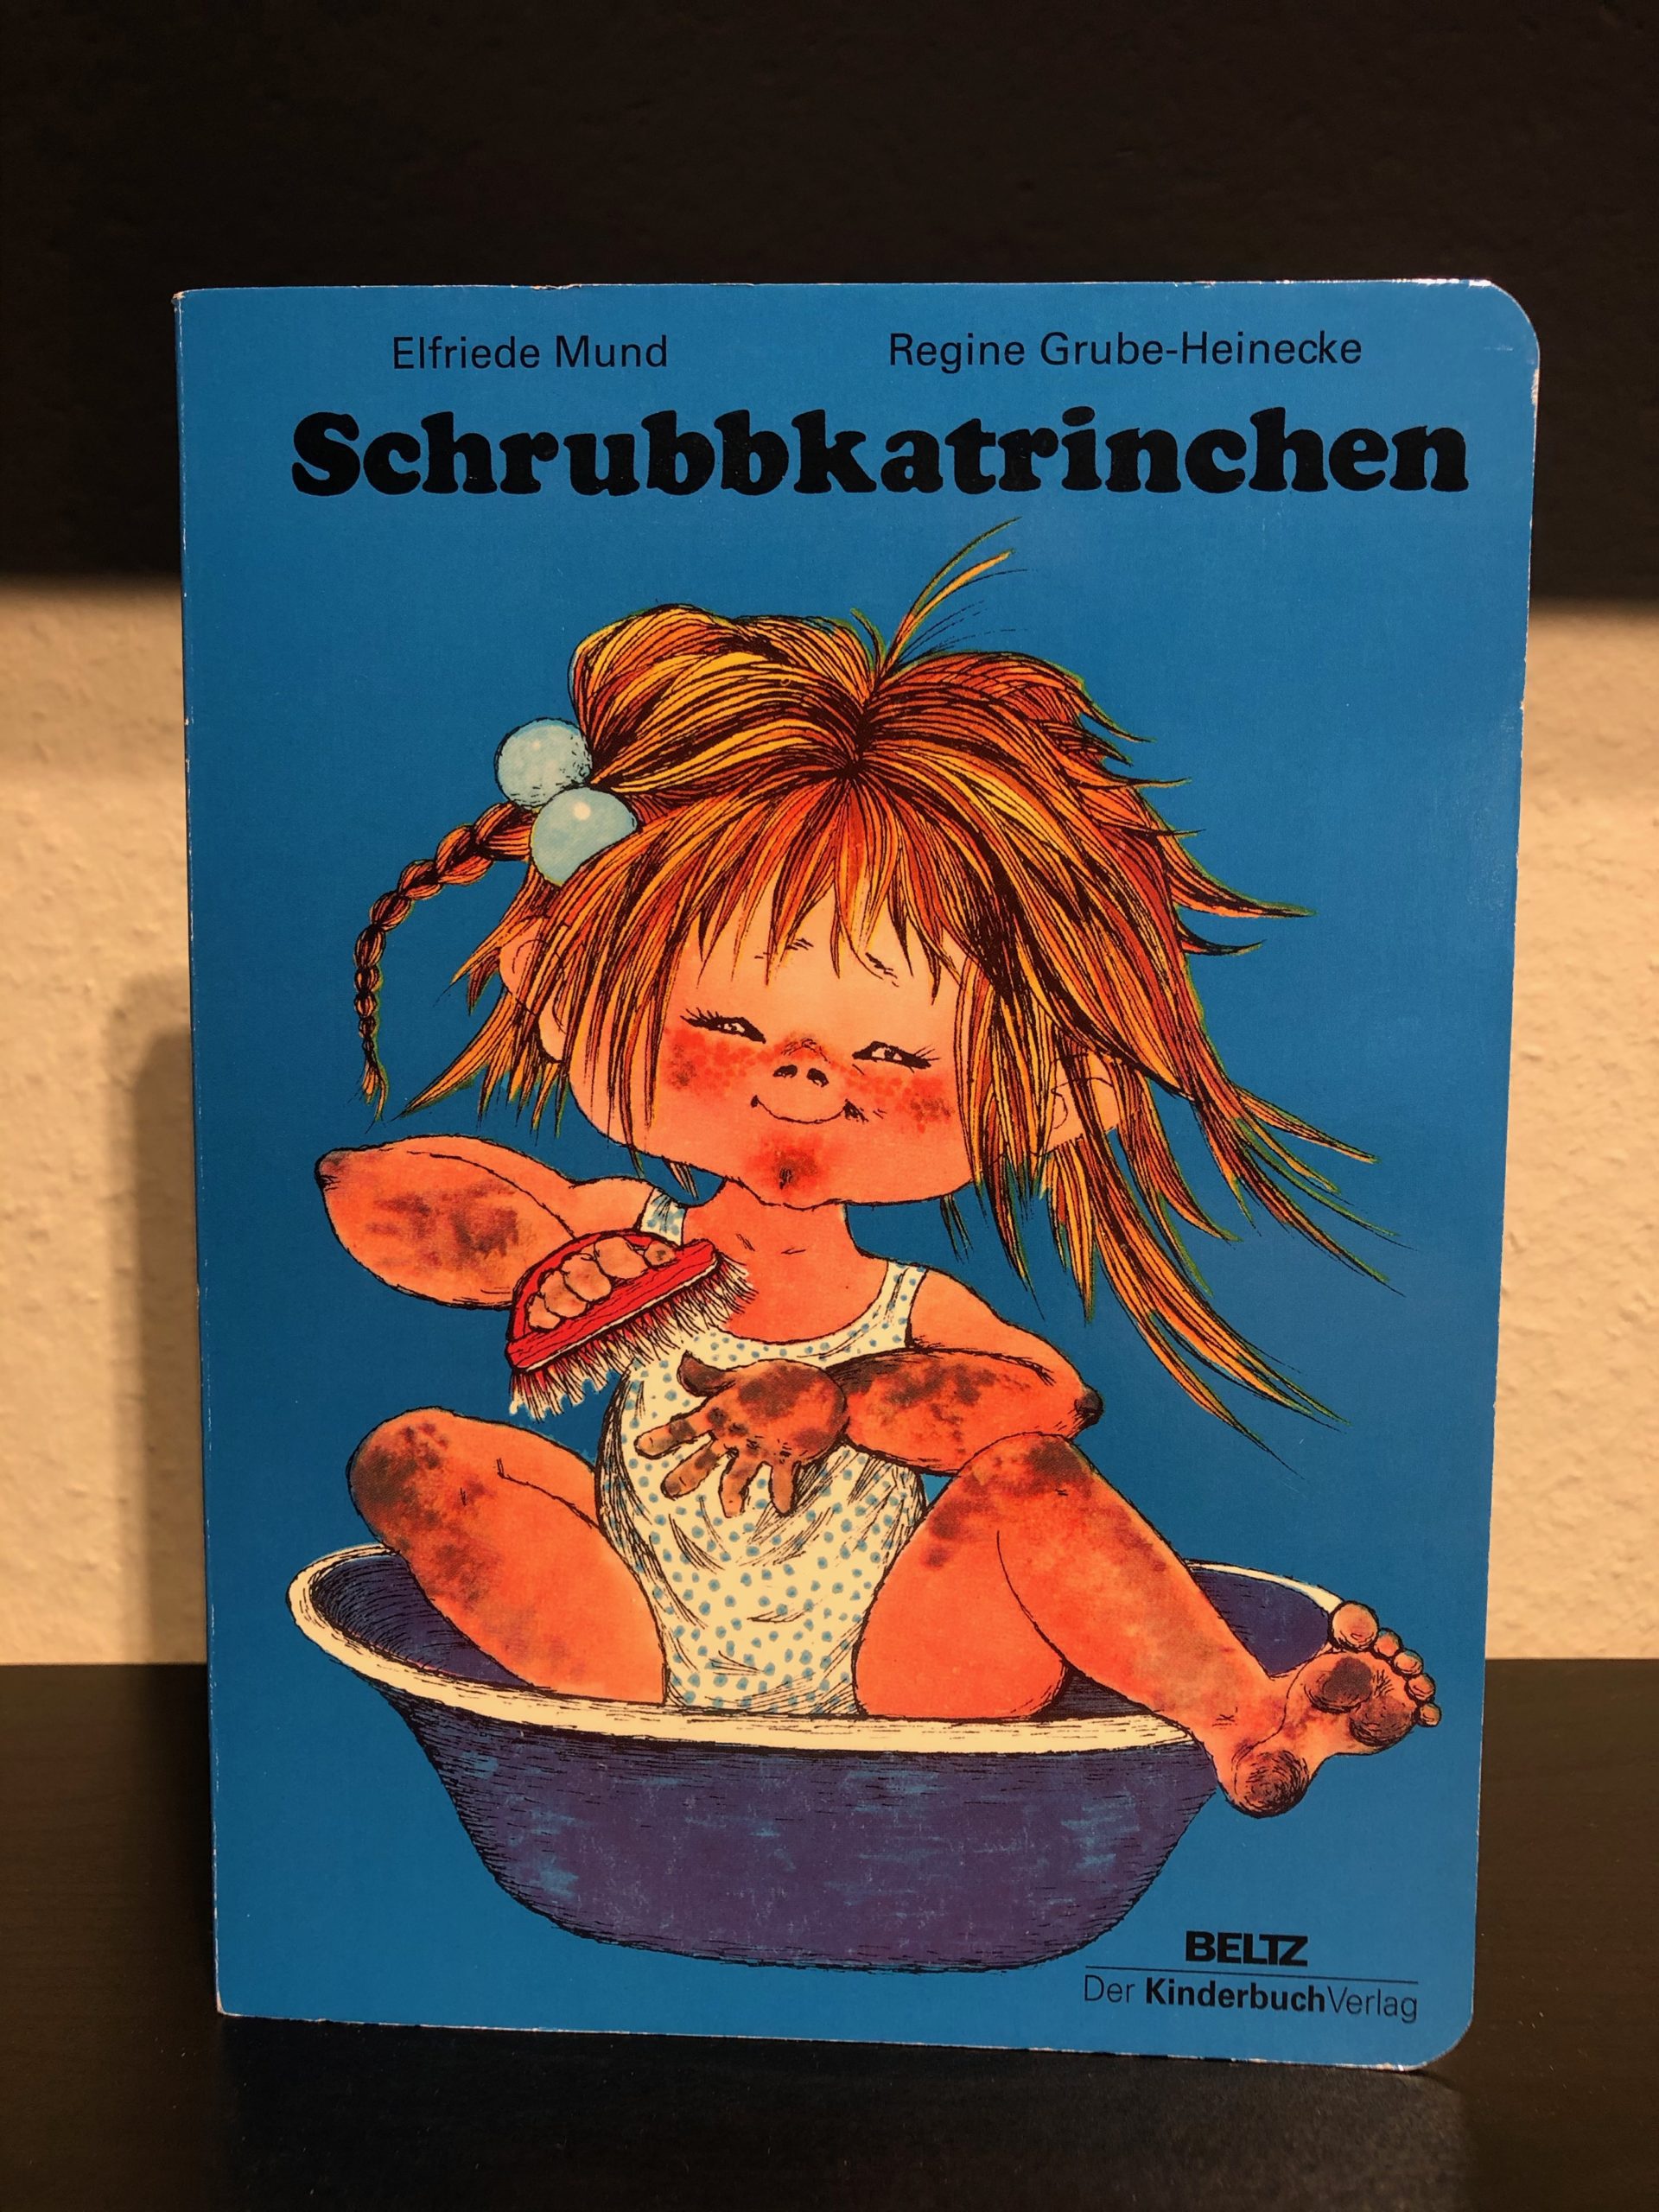 Schrubbkatrinchen - Elfriede Mund & Regine Grube-Heinecke